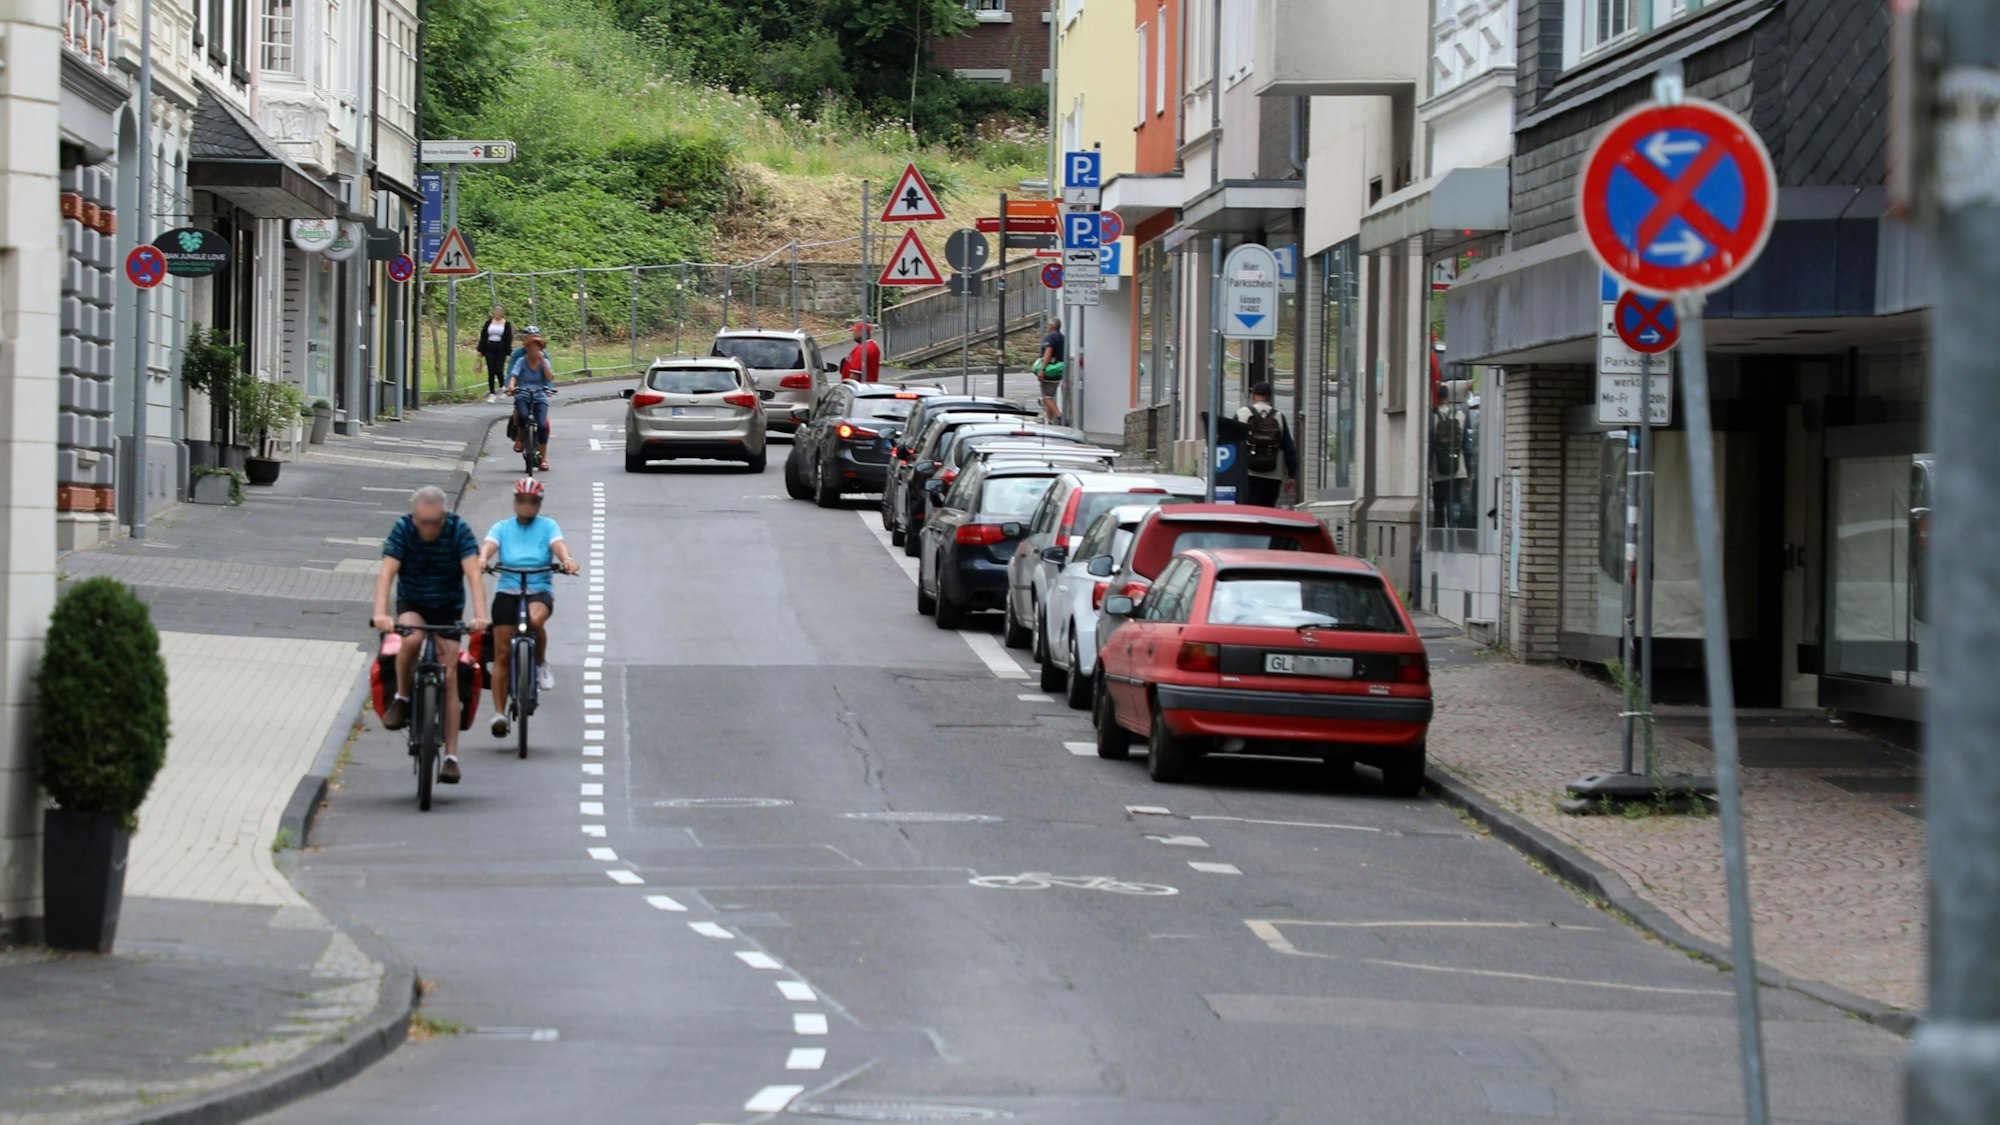 Links auf dem Foto sind Radfahrer auf dem Radstreifen unterwegs. Auf dem Parkstreifen rechts im Bild parken Autos. Auf der Fahrbahn in der Mitte fahren Autos. 